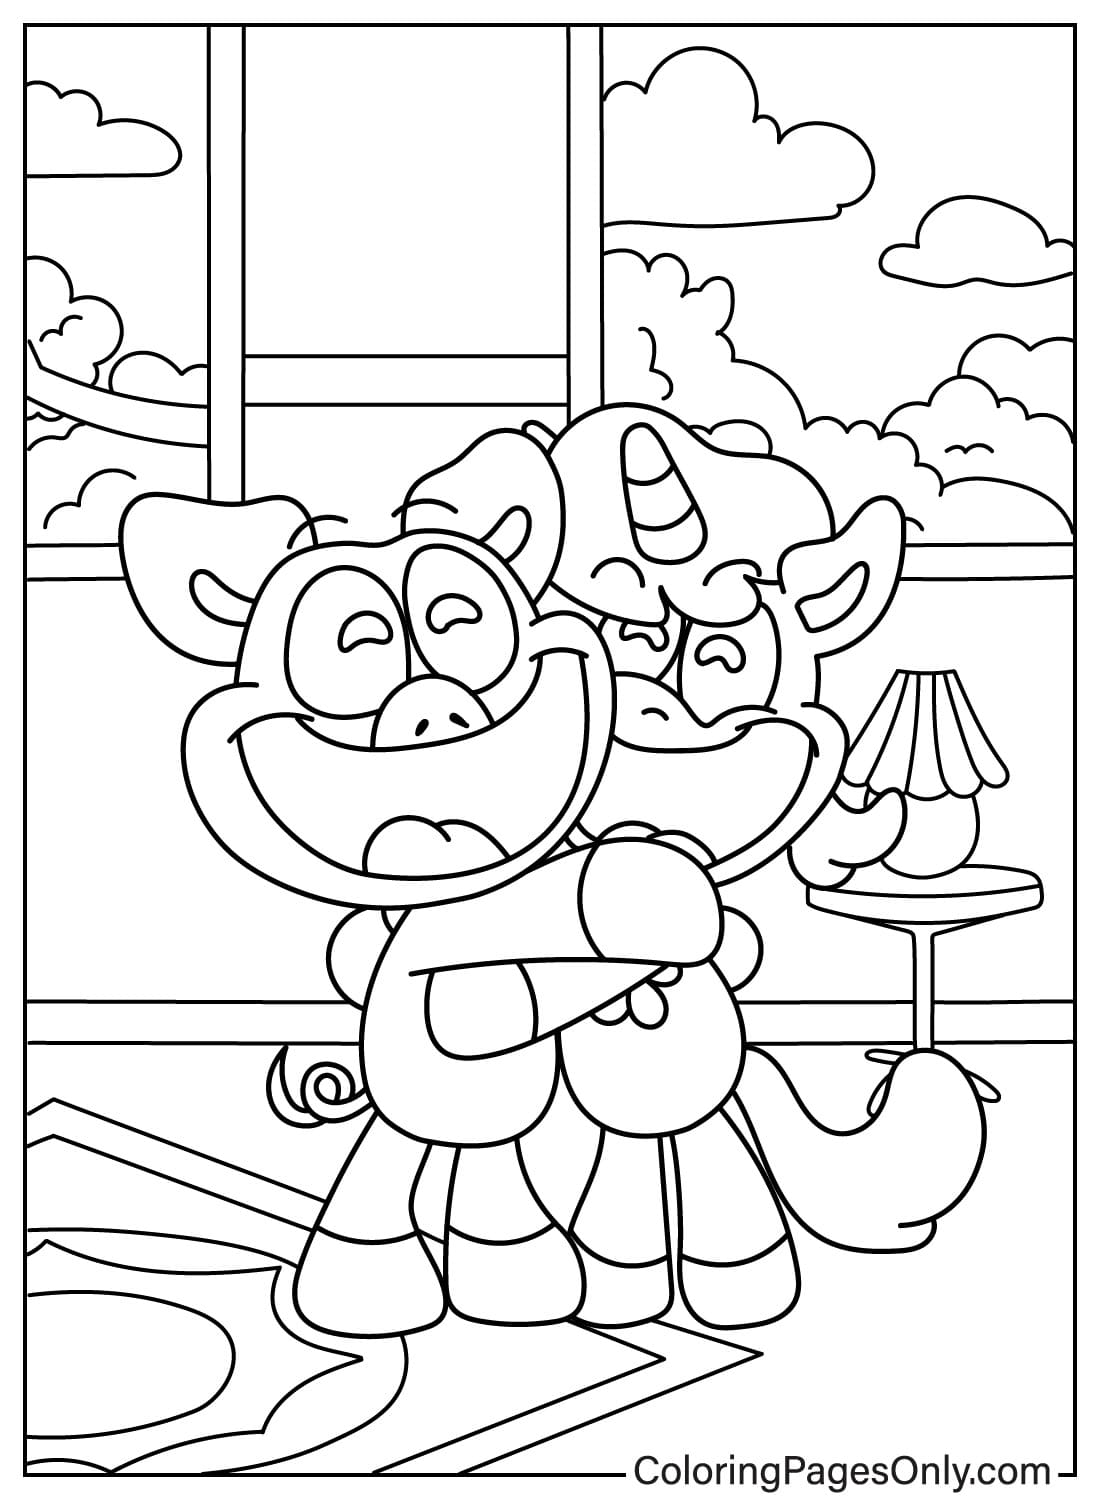 Página para colorir PickyPiggy e CraftyCorn para crianças de Smiling Critters